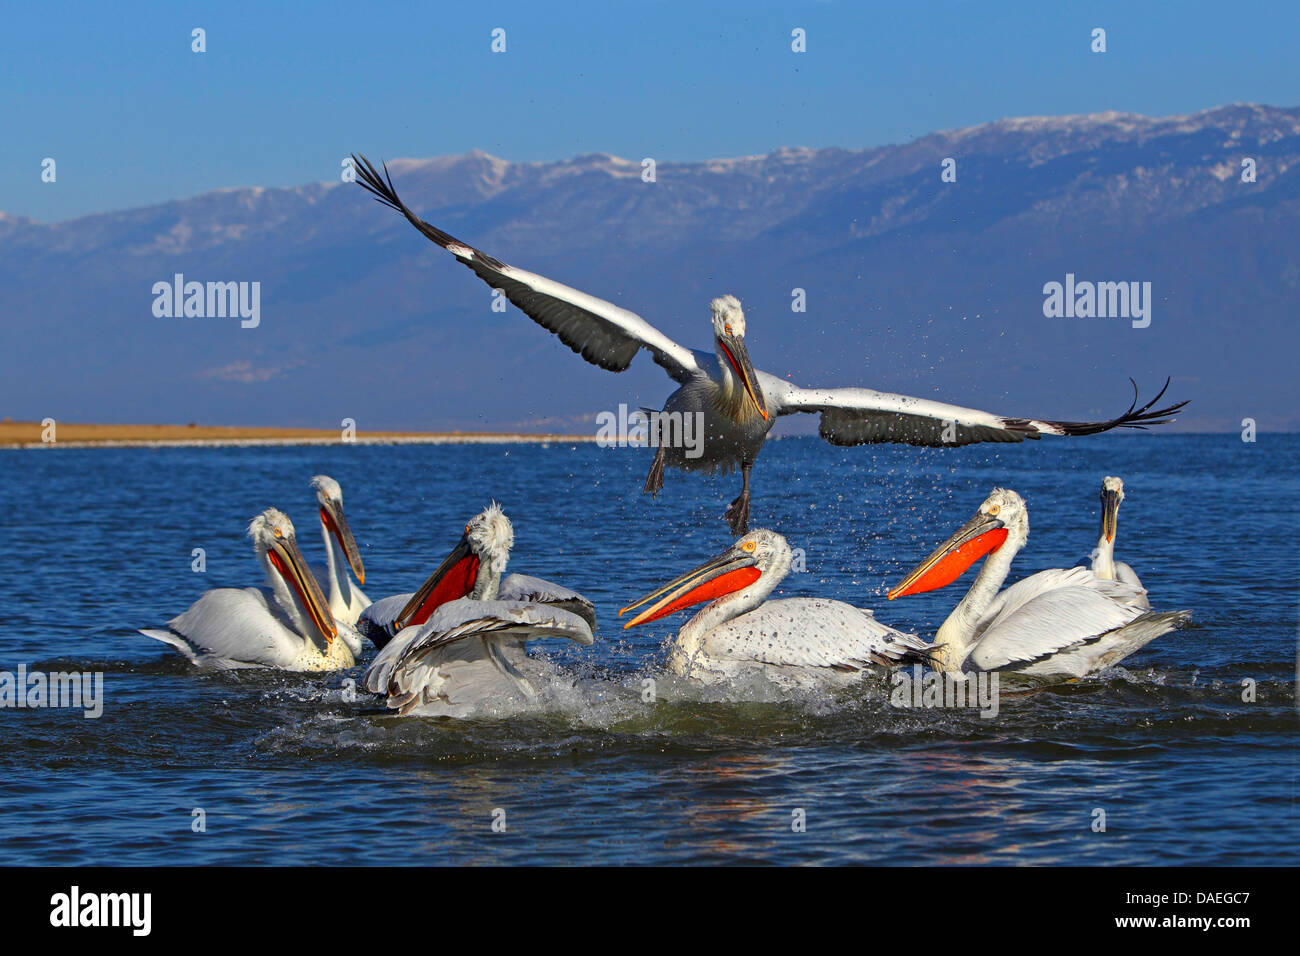 Dalmatian pelican (Pelecanus crispus), a Dalmatian pelican flying off from a group of swimming birds, Greece, Lake Kerkini Stock Photo